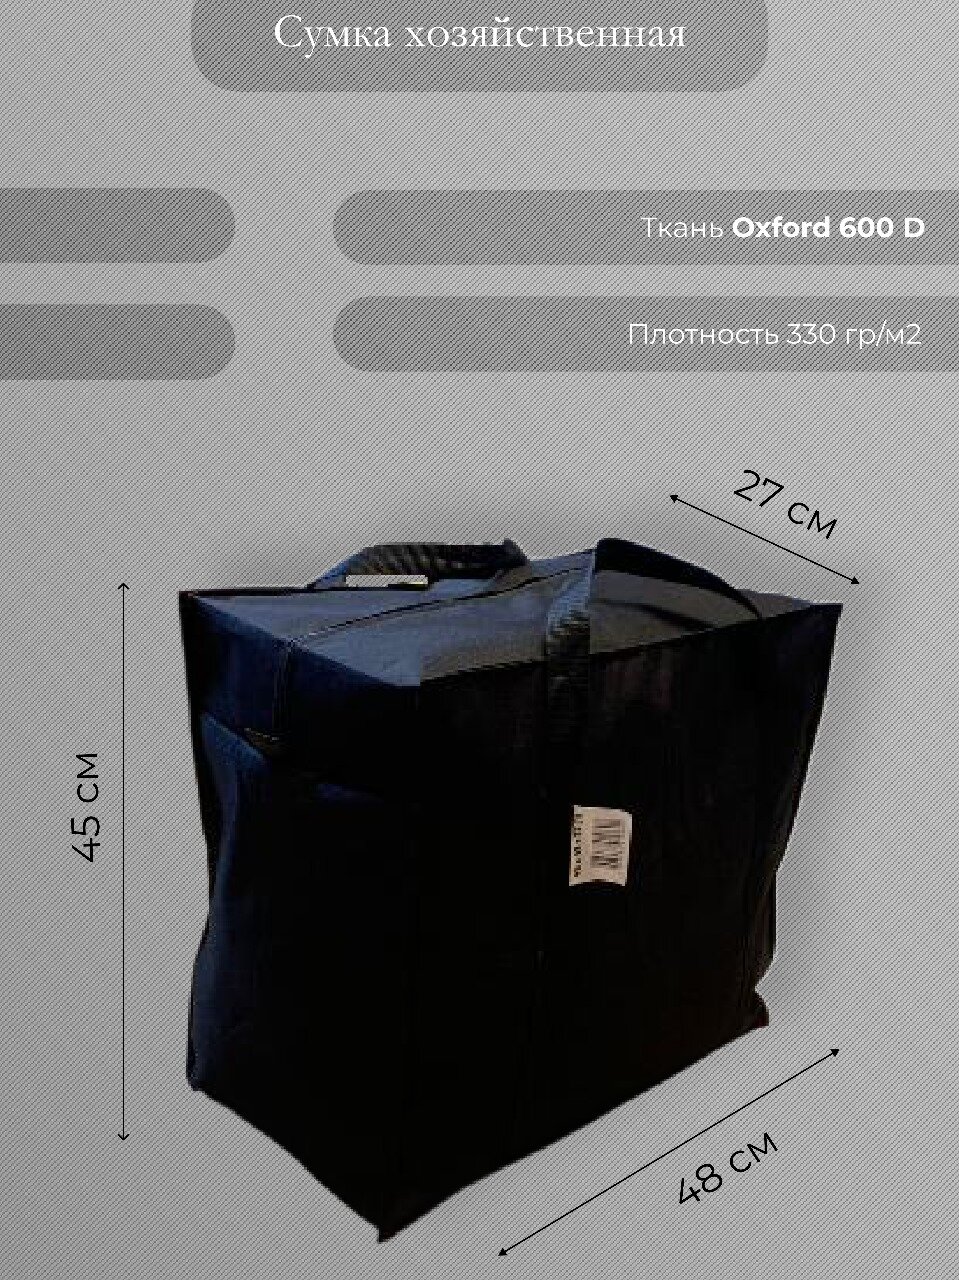 Сумка-баул Сумка хозяйственная "Кристалл" Особопрочная, водонепроницаемая, материал Oxford 600D, размер 48 х 45 х 27 см